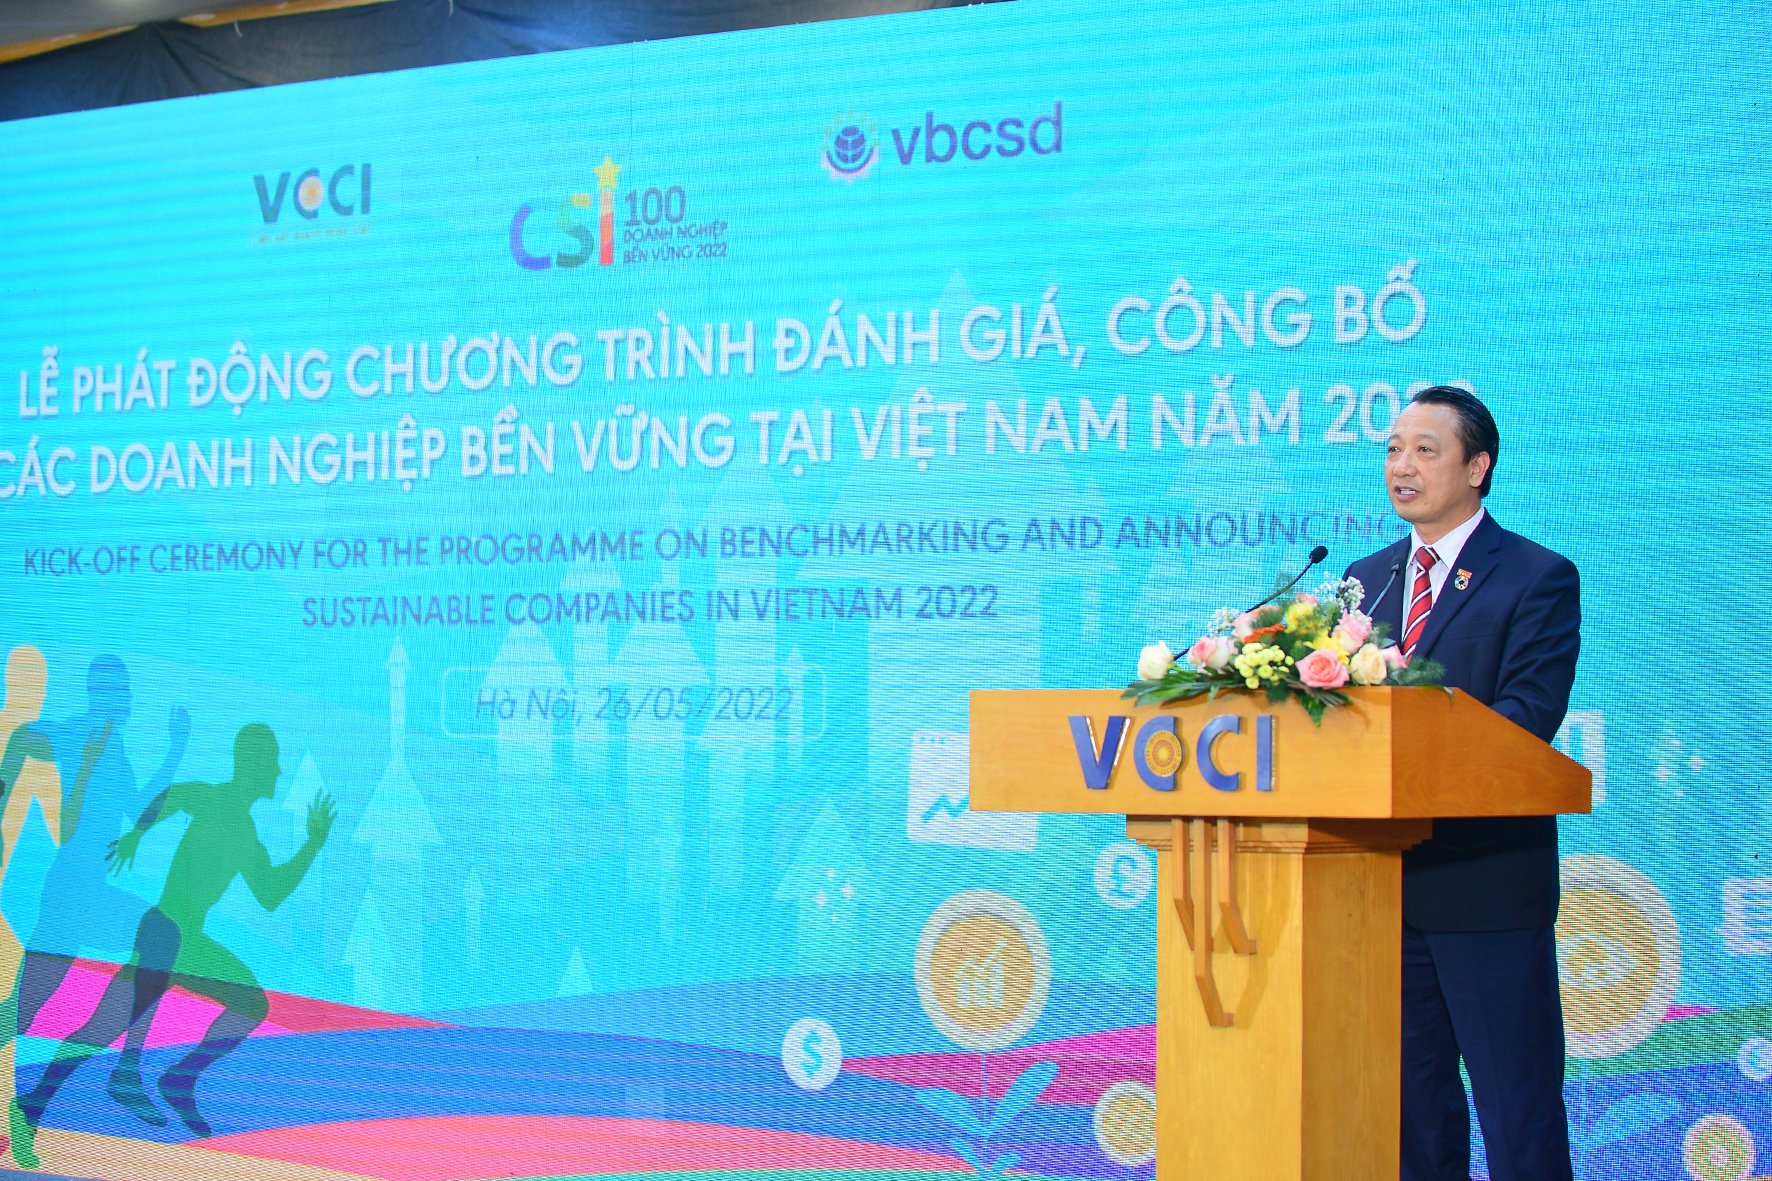 Phó Chủ tịch chuyên trách VCCI Nguyễn Quang Vinh - Chủ tịch VBCSD phát biểu tại lễ phát động